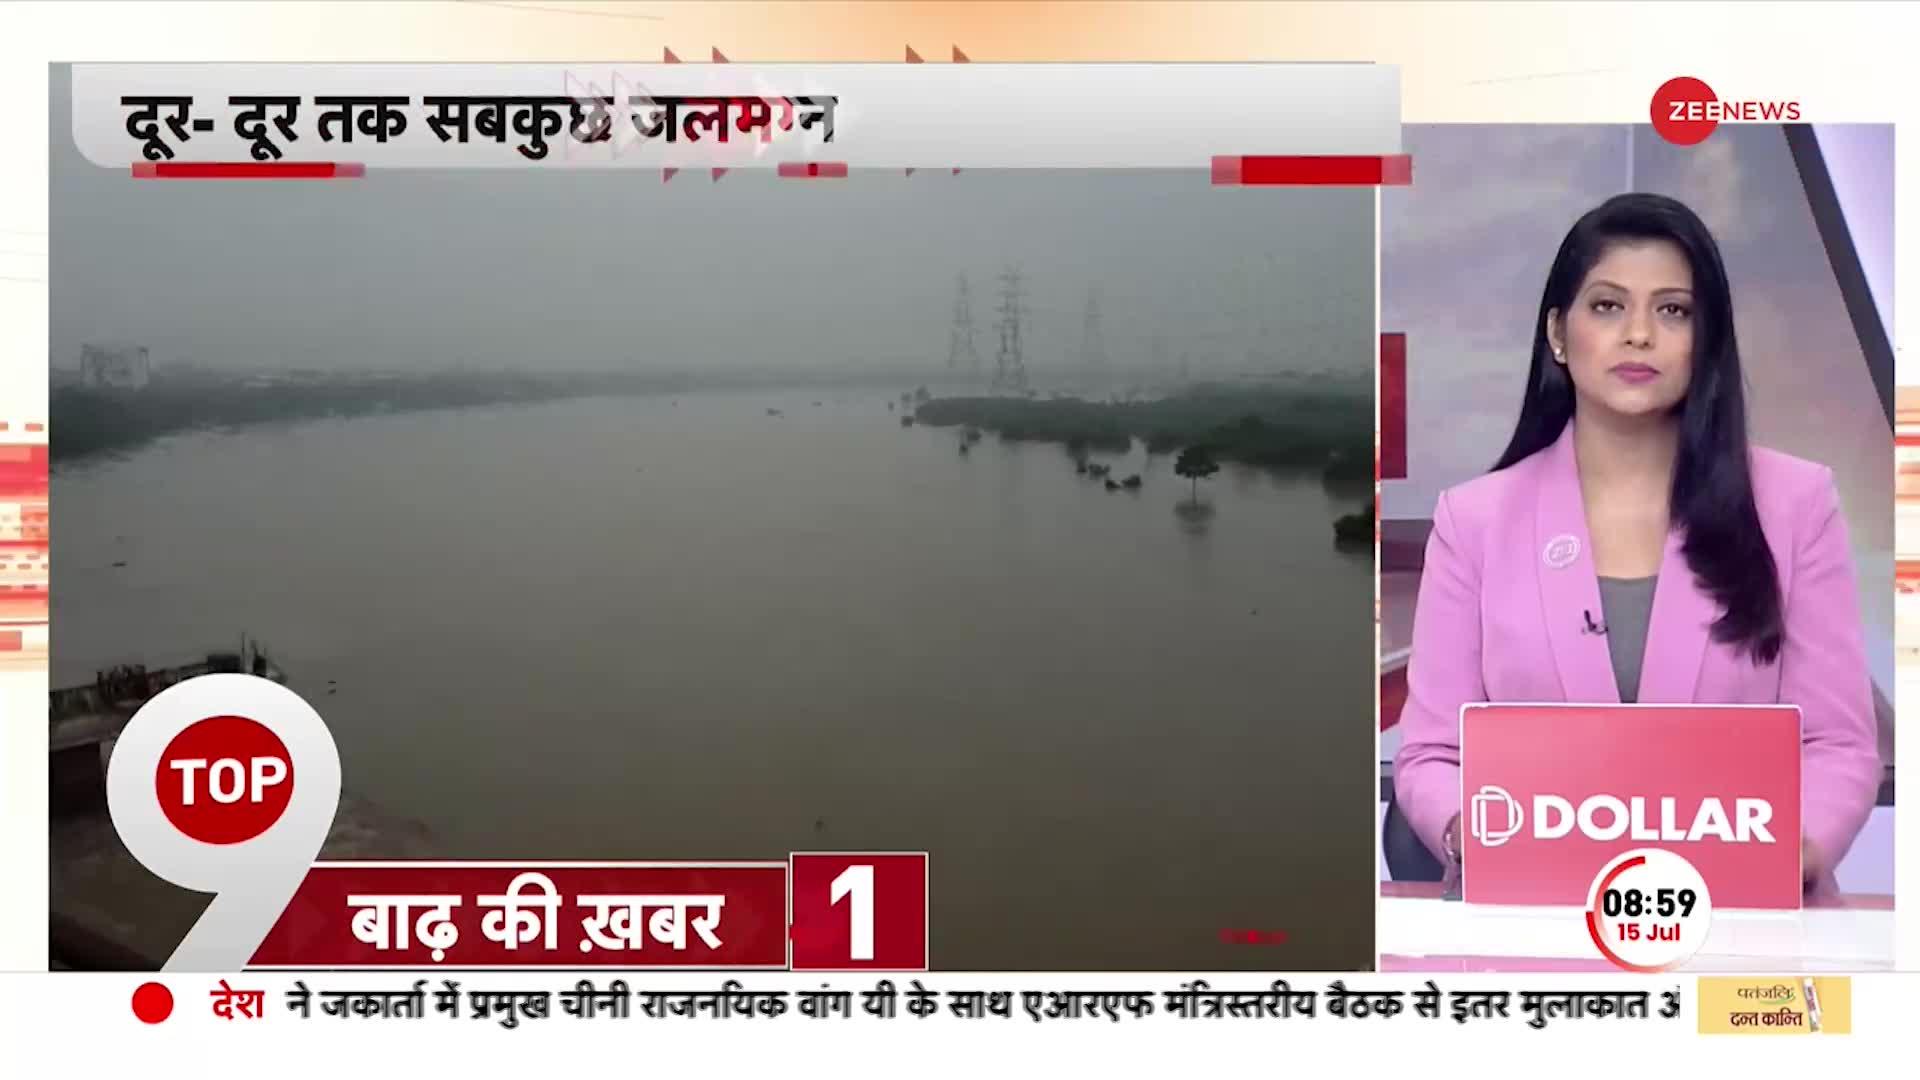 Delhi Floods Update: दिल्ली में पुराने पुल के पास दिखा बाढ़ का रौद्र अवतार! दूर-दूर तक सब जलमग्न